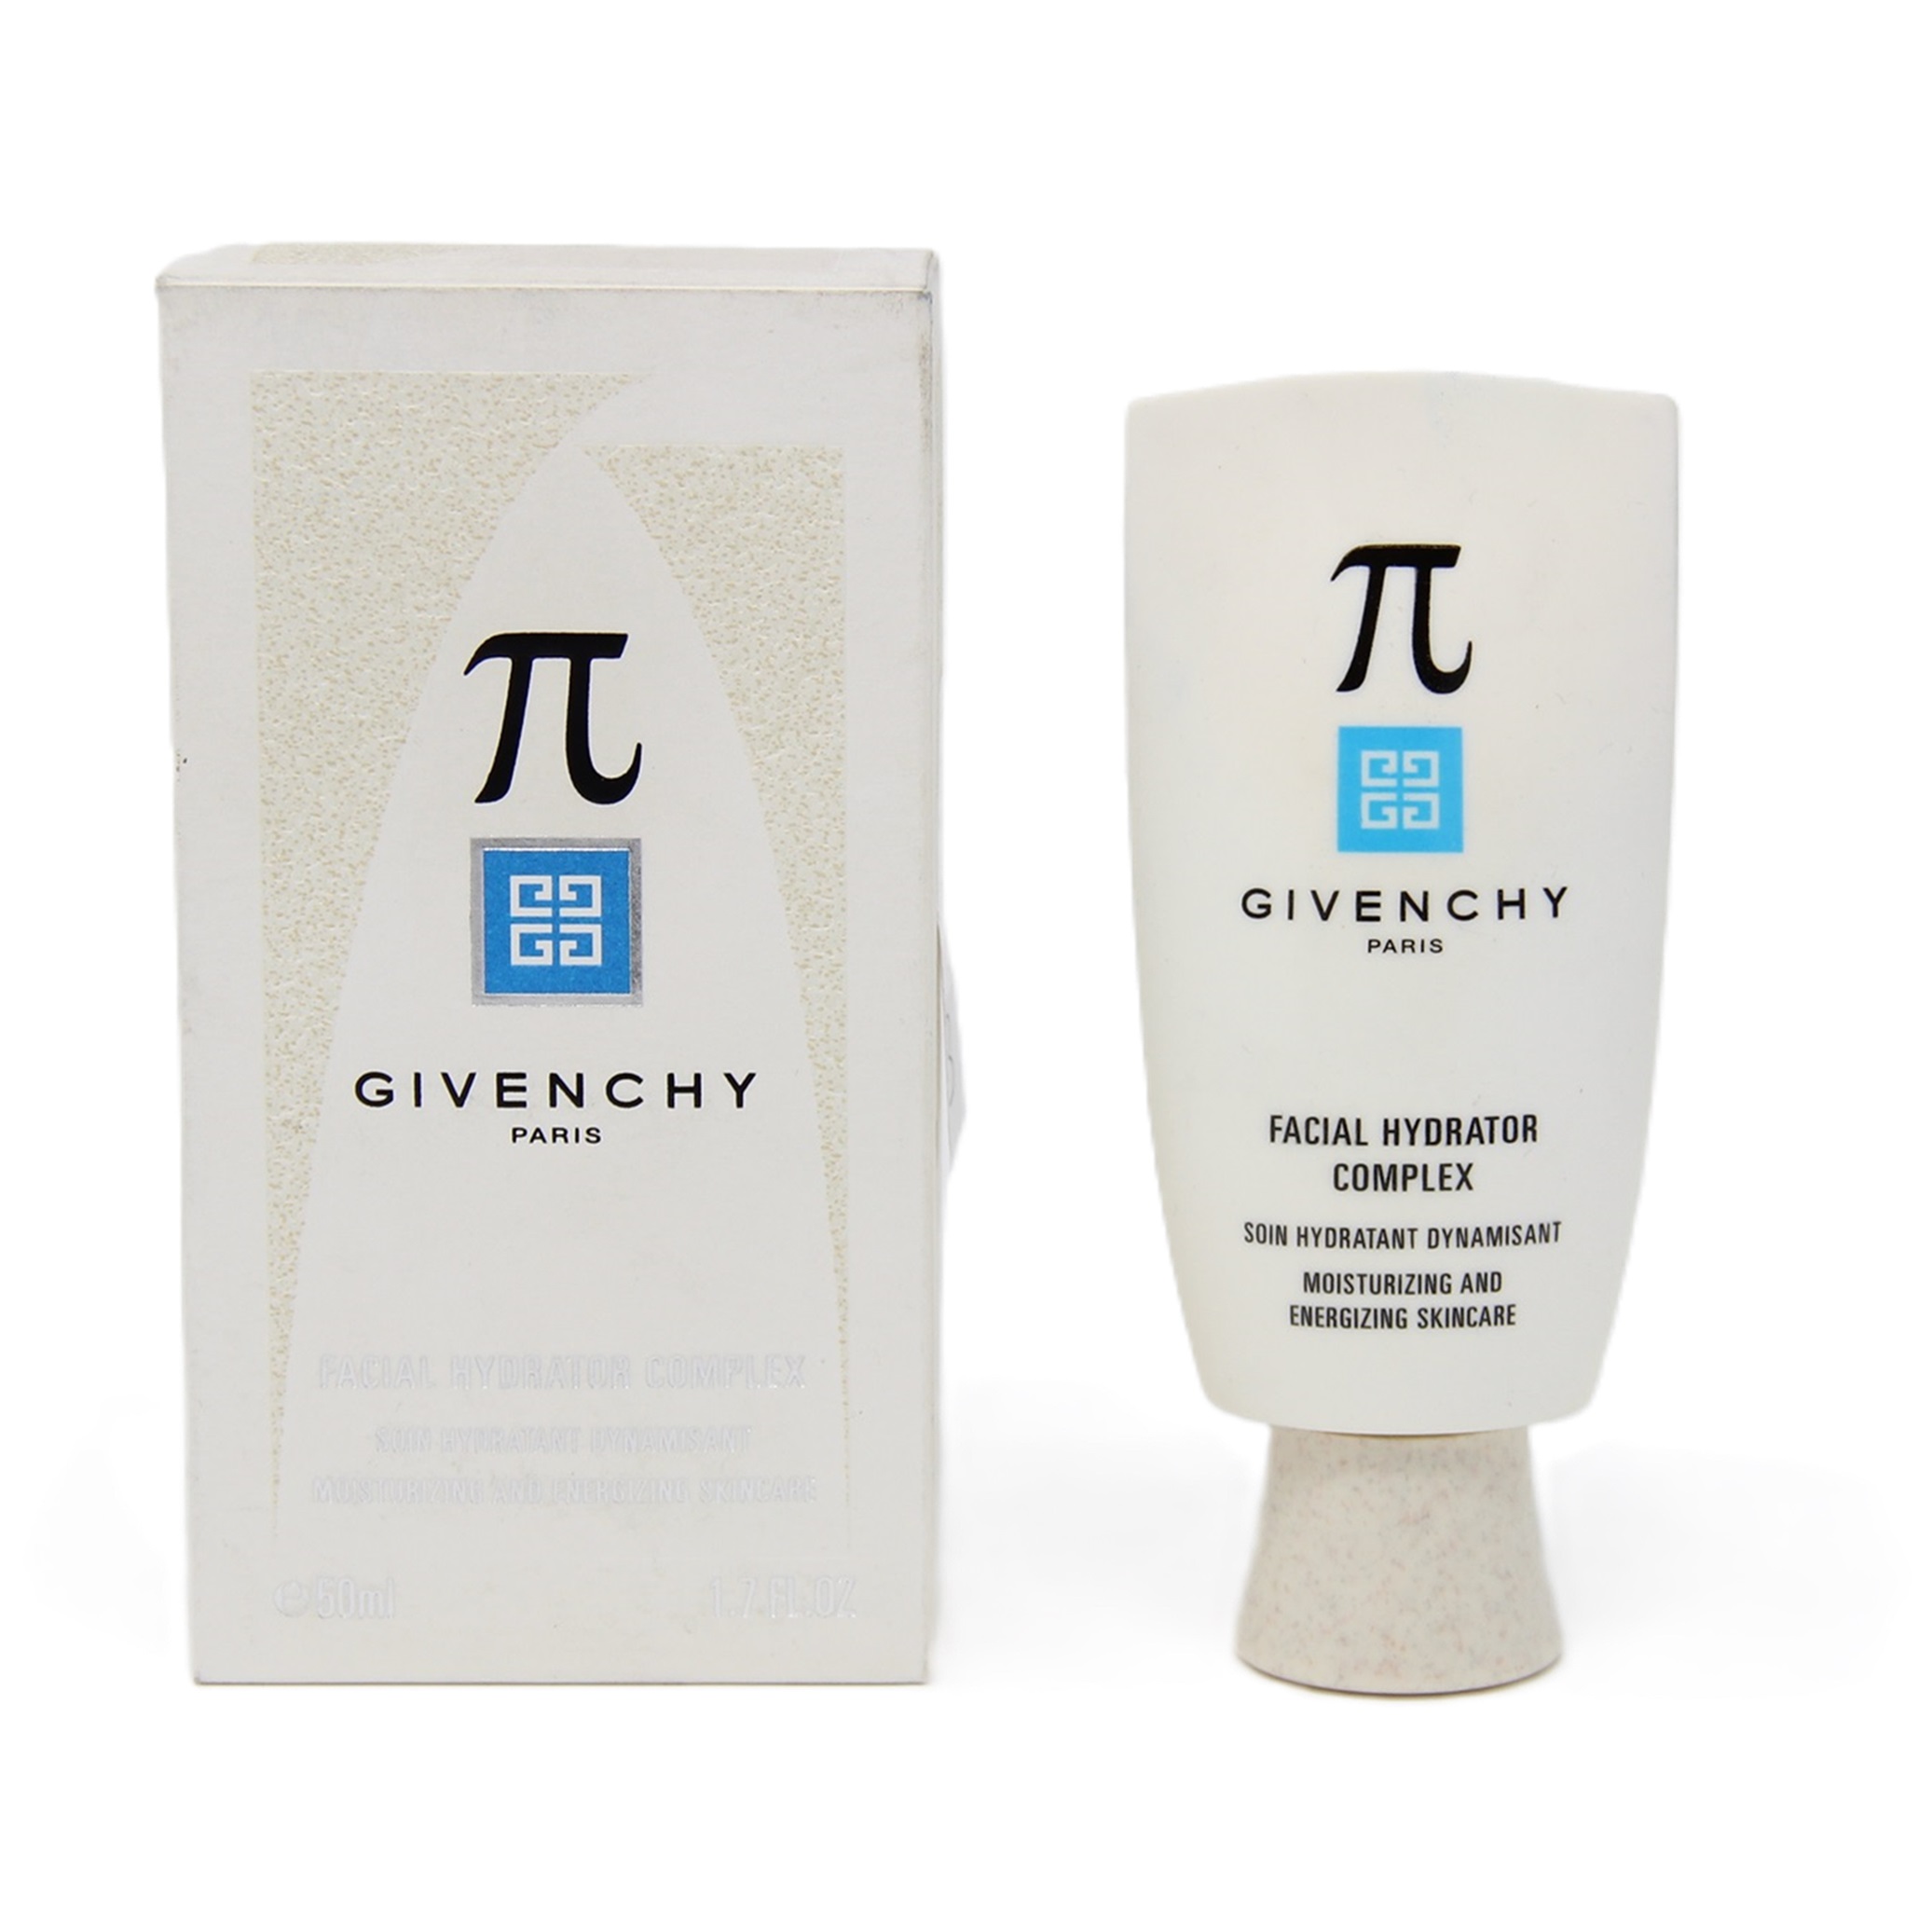 Givenchy Pi Feuchtigkeitscreme Moisturizing and Energizing Skincare 50ml